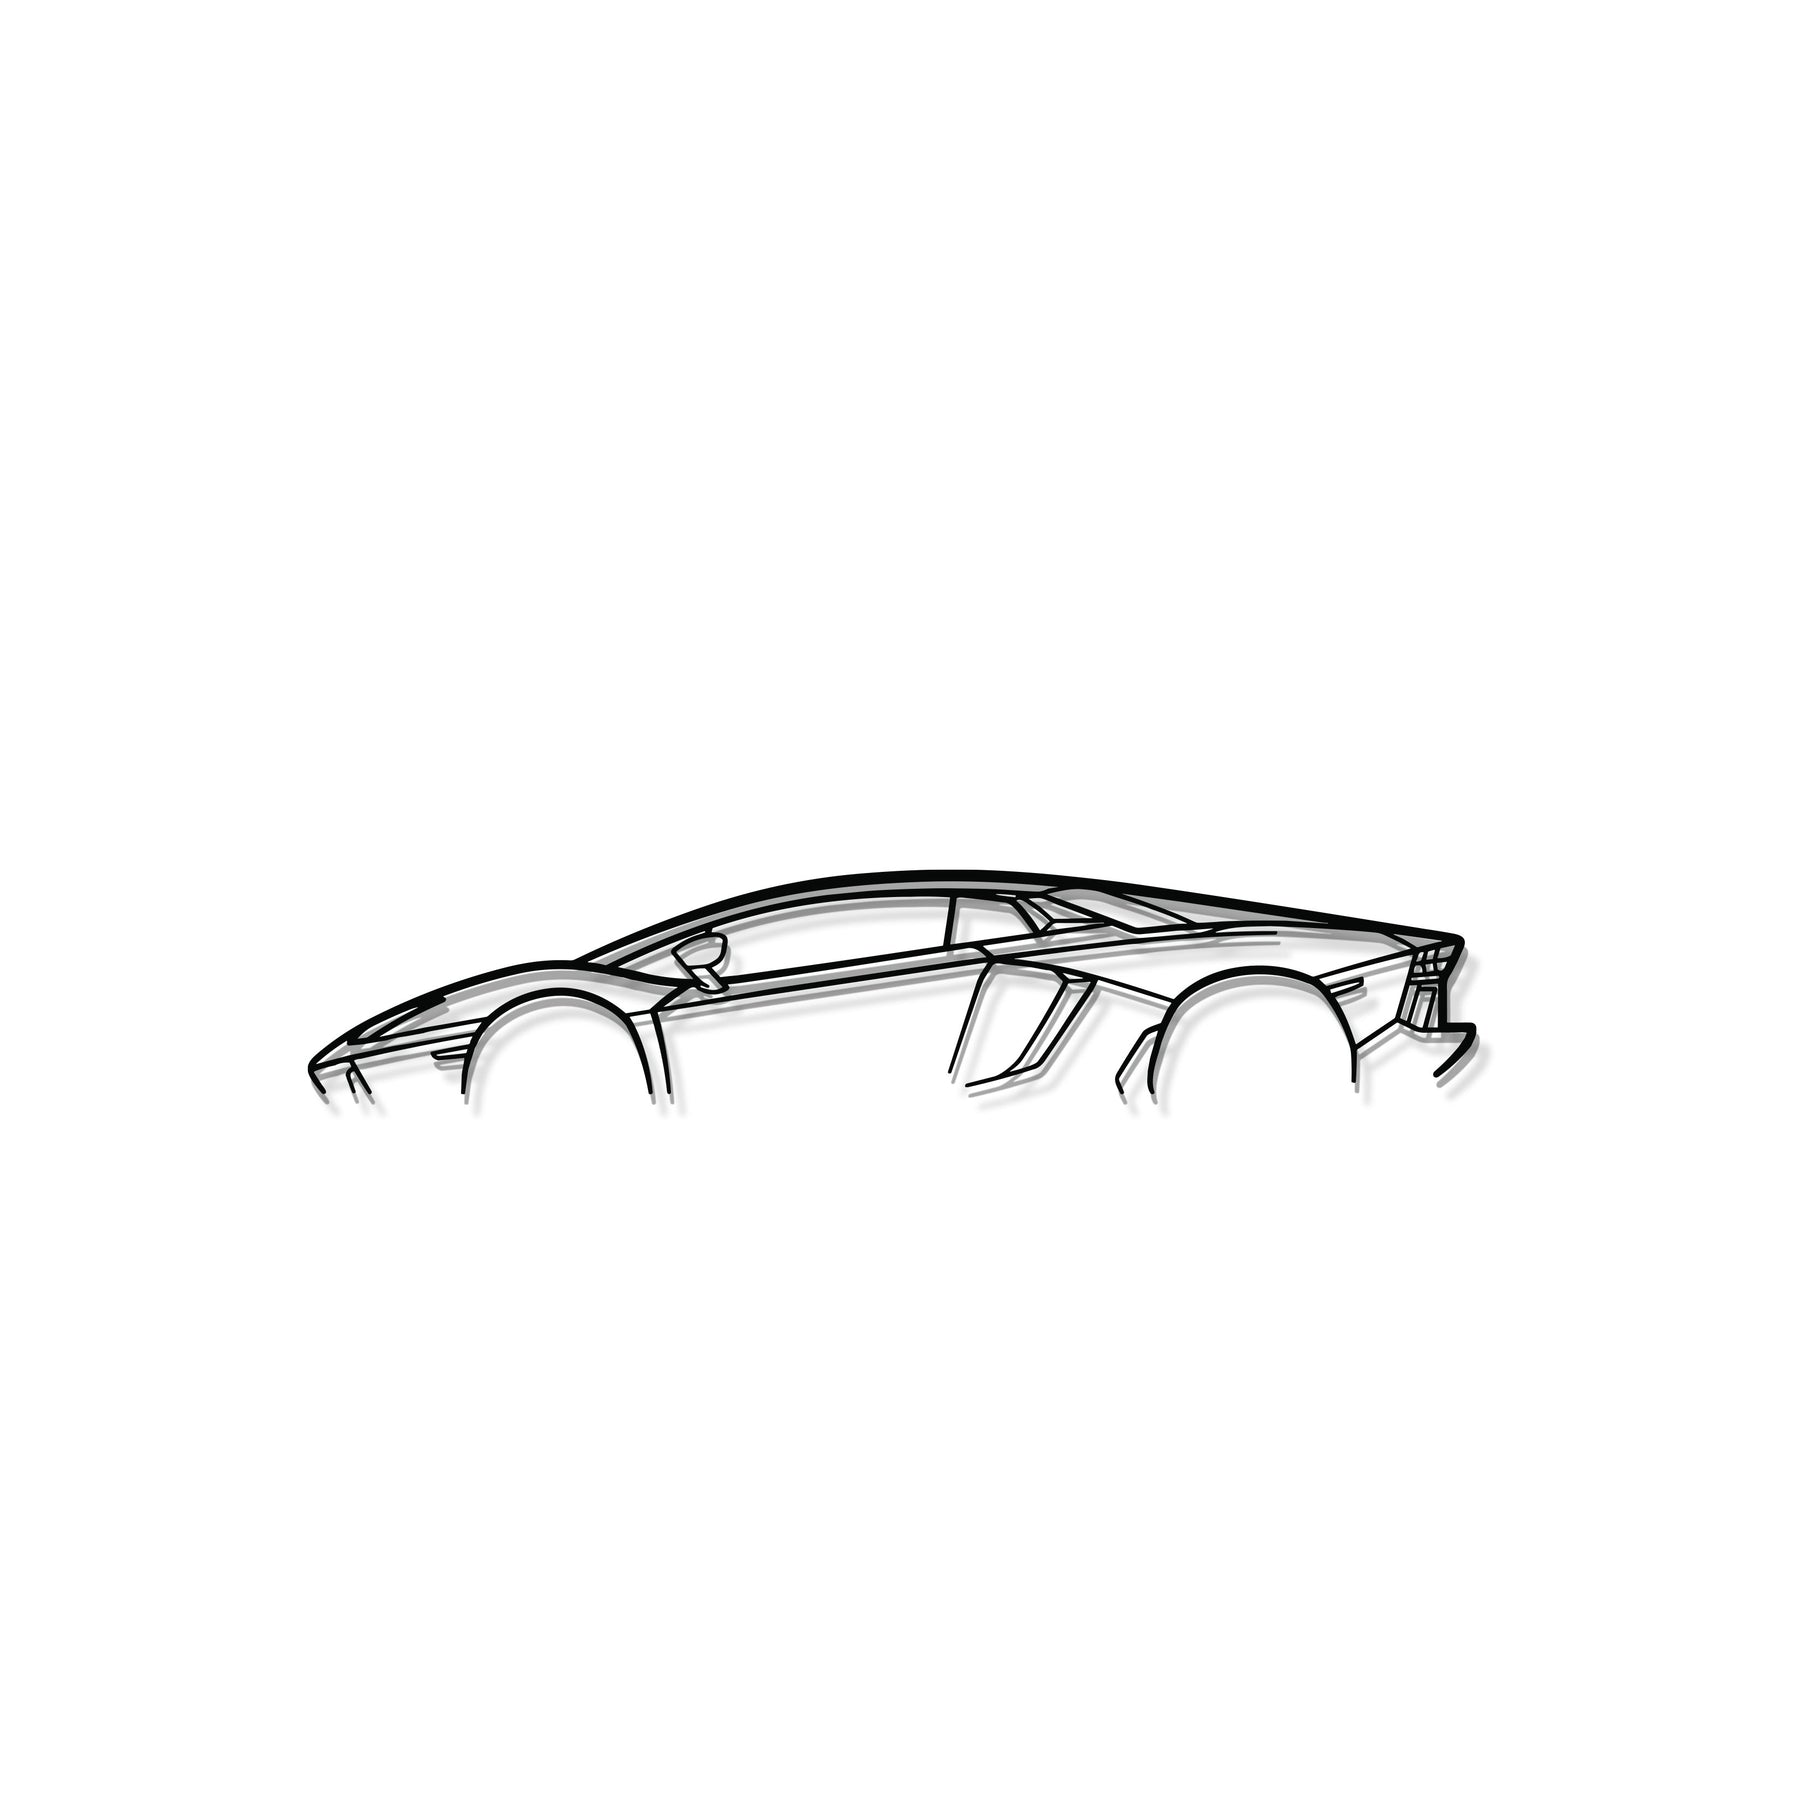 Aventador Metal Car Wall Art - MT0888